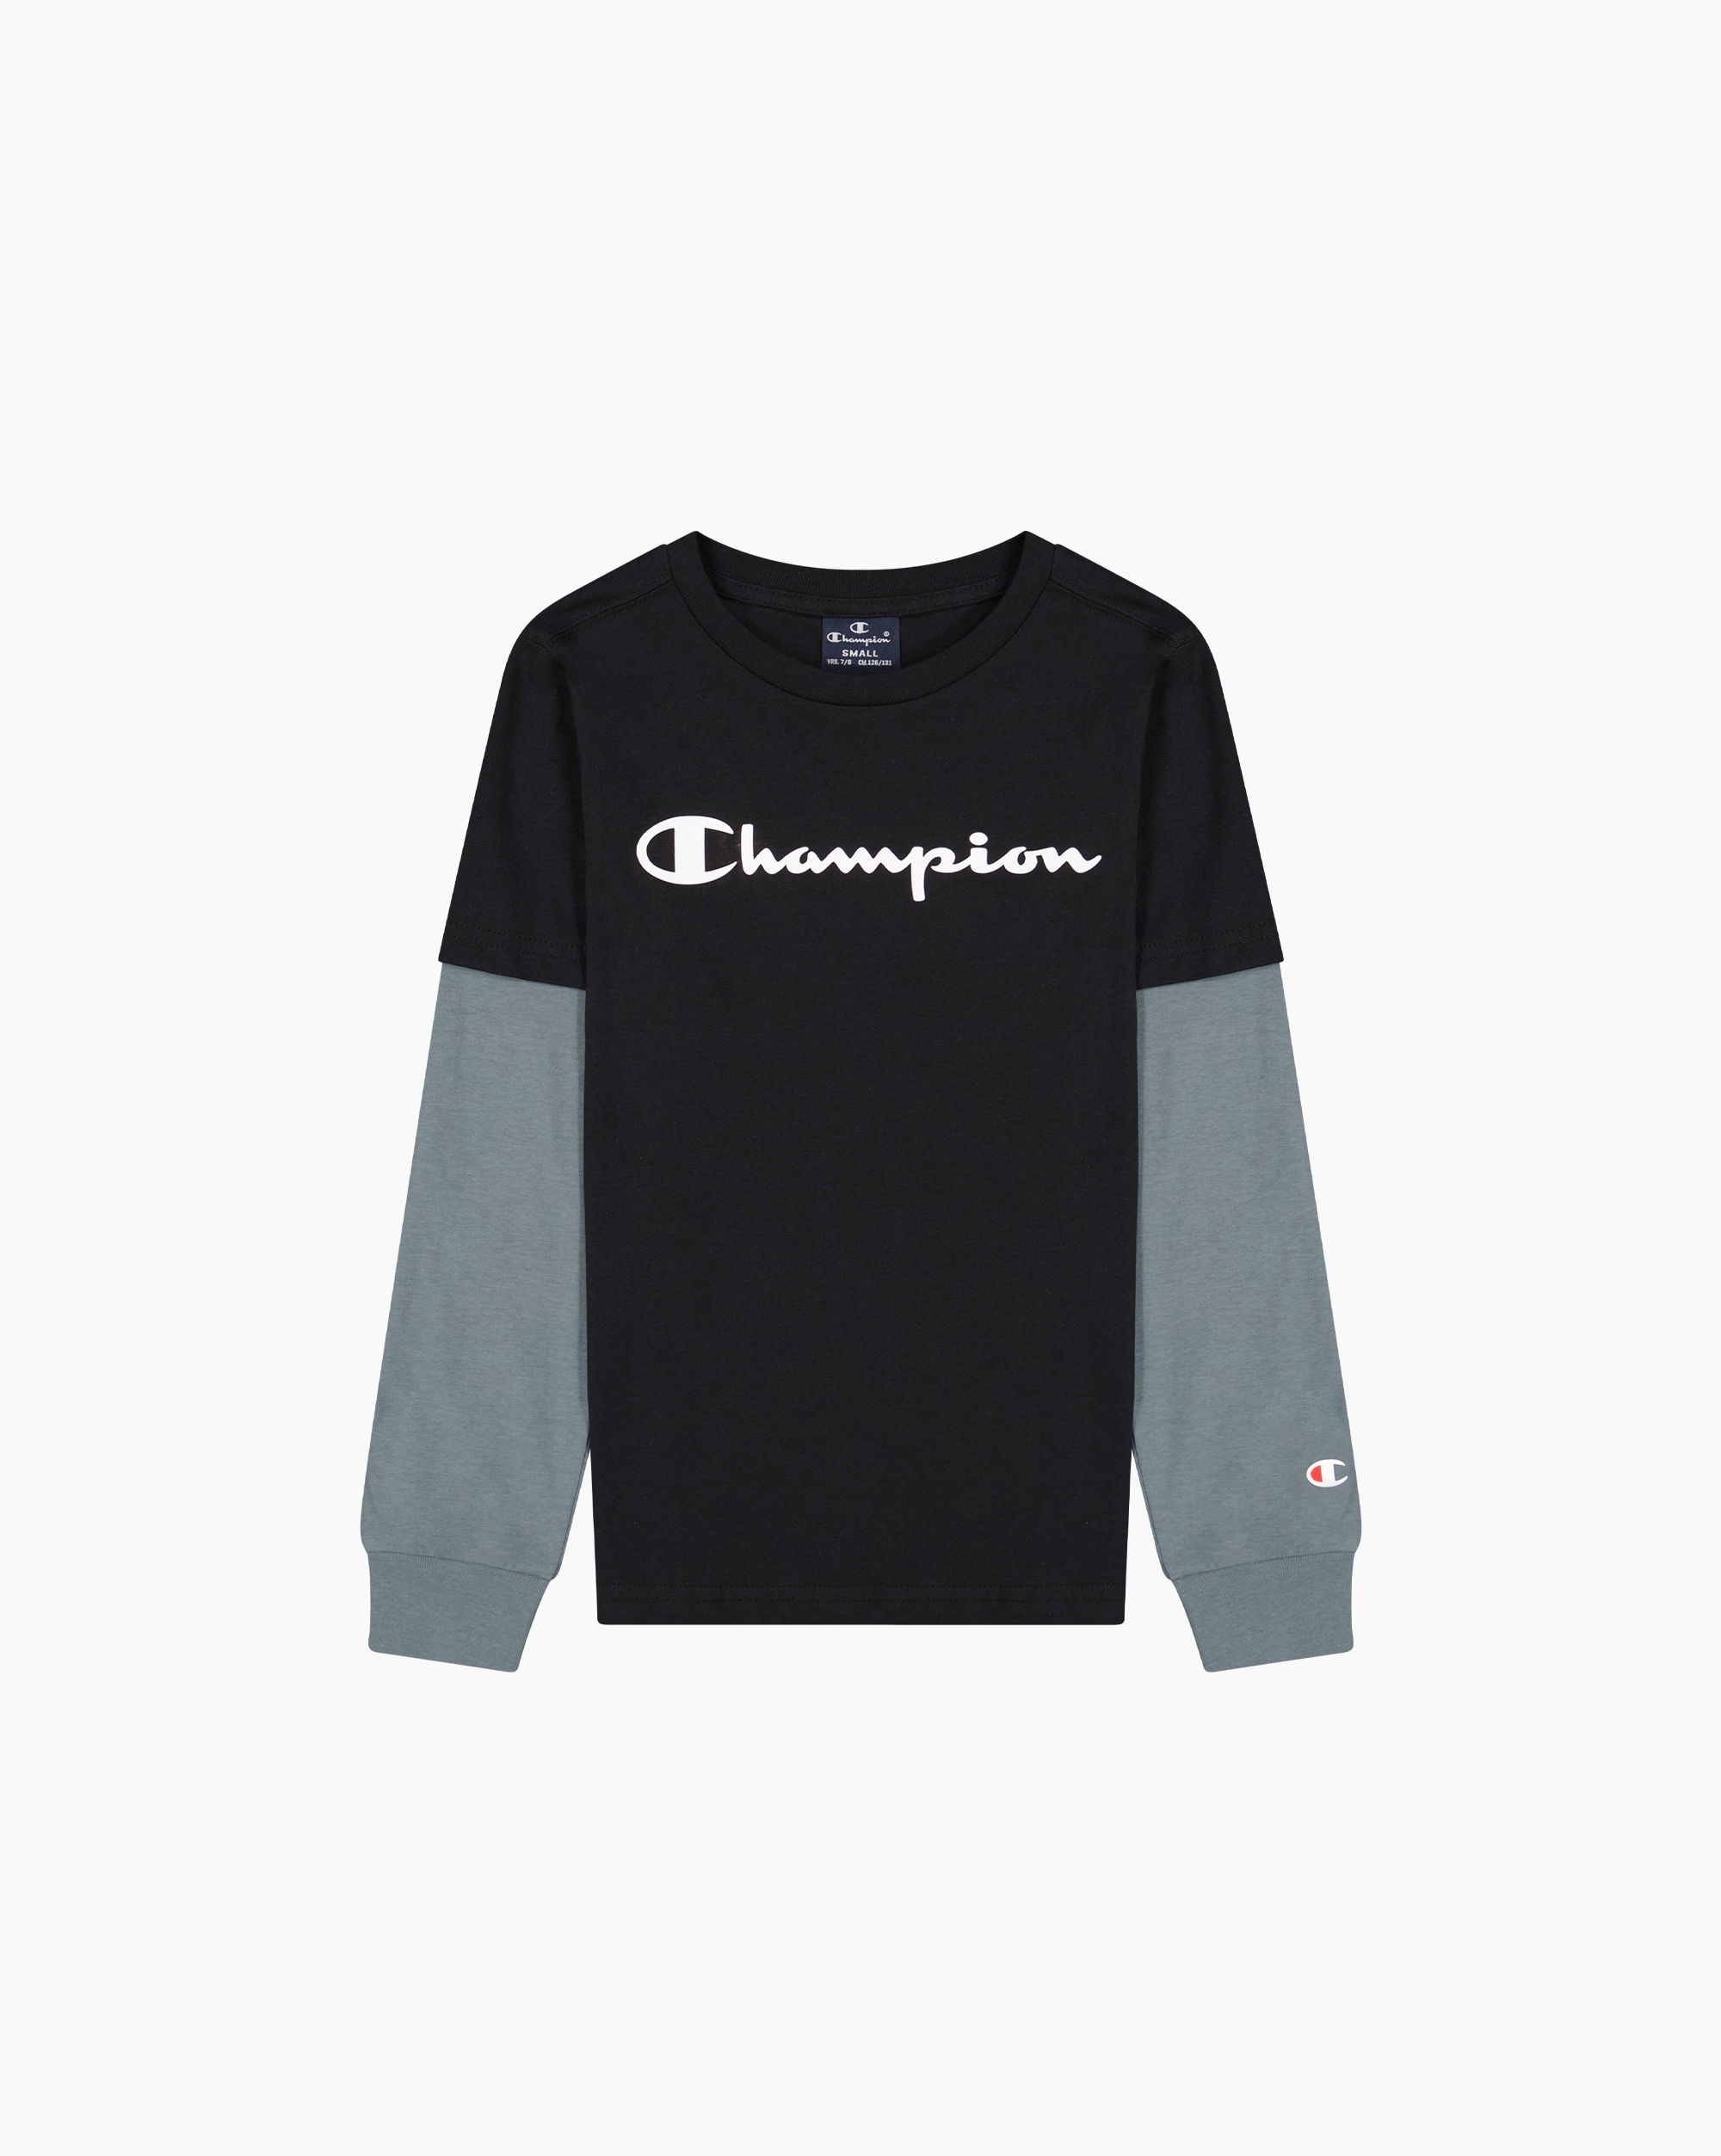 Champion T-Shirt Manica Lunga Nero Bambino